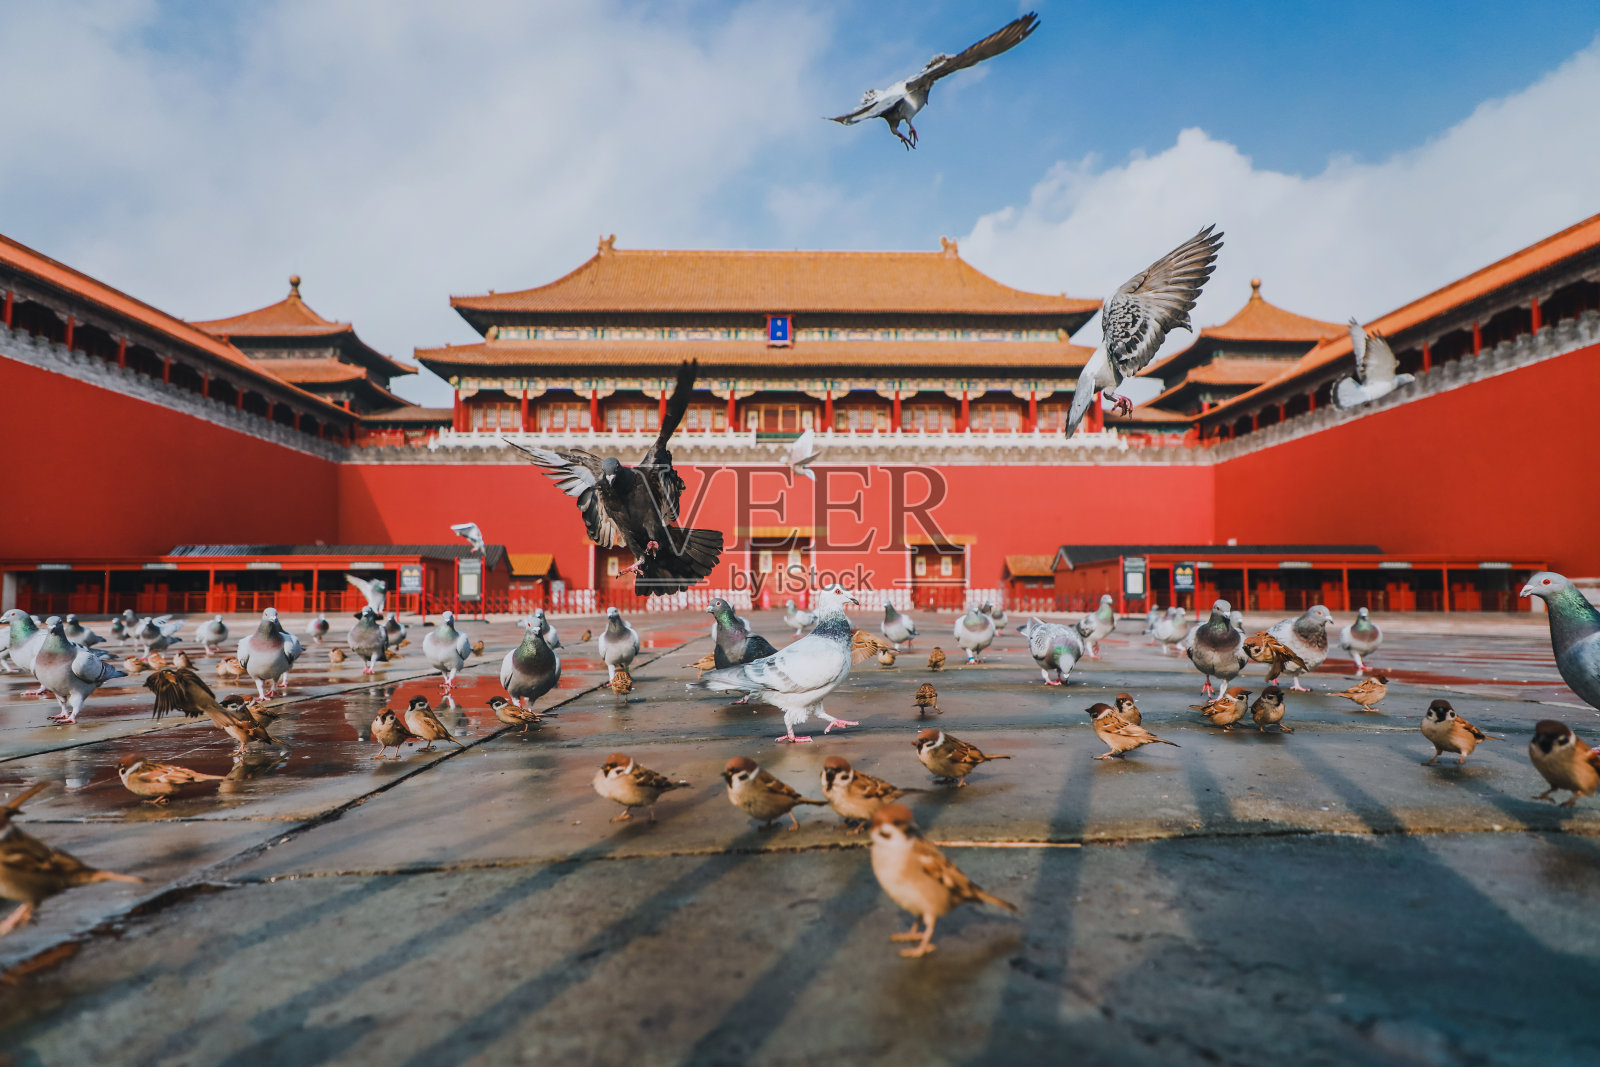 中国北京紫禁城广场上的鸽子。鸽子在北京紫禁城红墙前飞翔。图中牌匾的中文翻译:午门。照片摄影图片